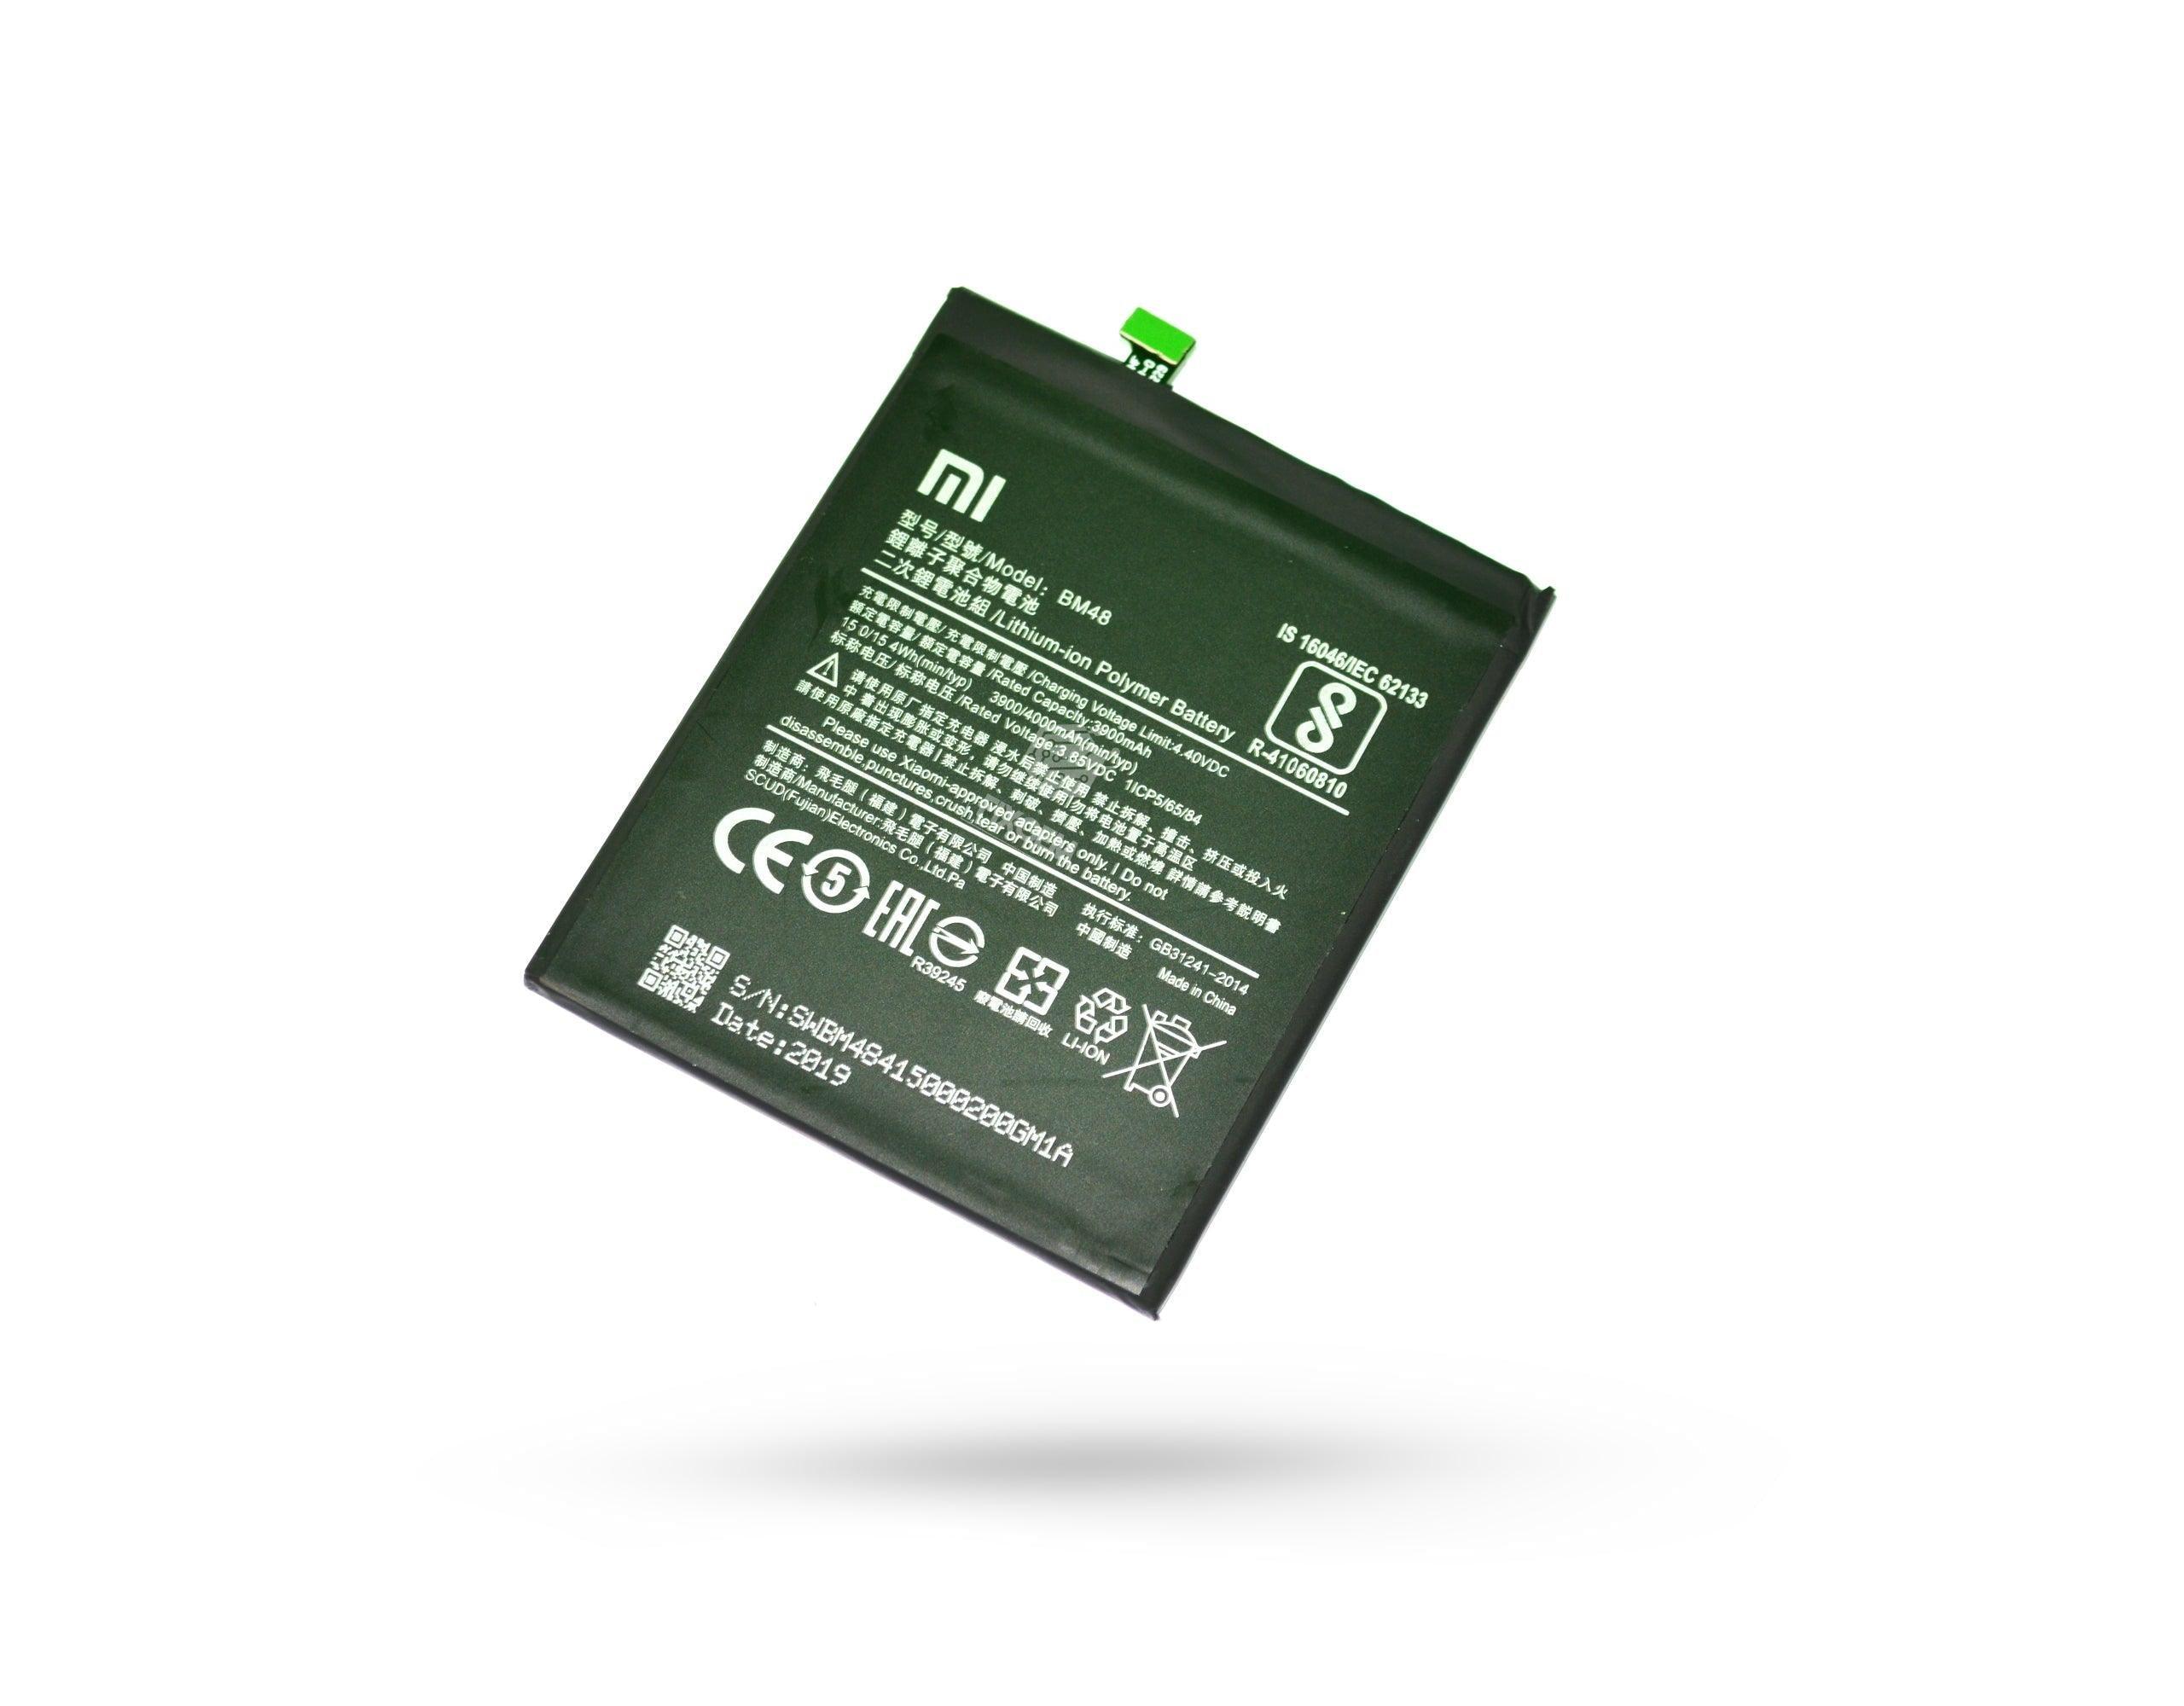 Bateria Xiaomi Note 2 2015051 Bm48 a solo $ 130.00 Refaccion y puestos celulares, refurbish y microelectronica.- FixOEM